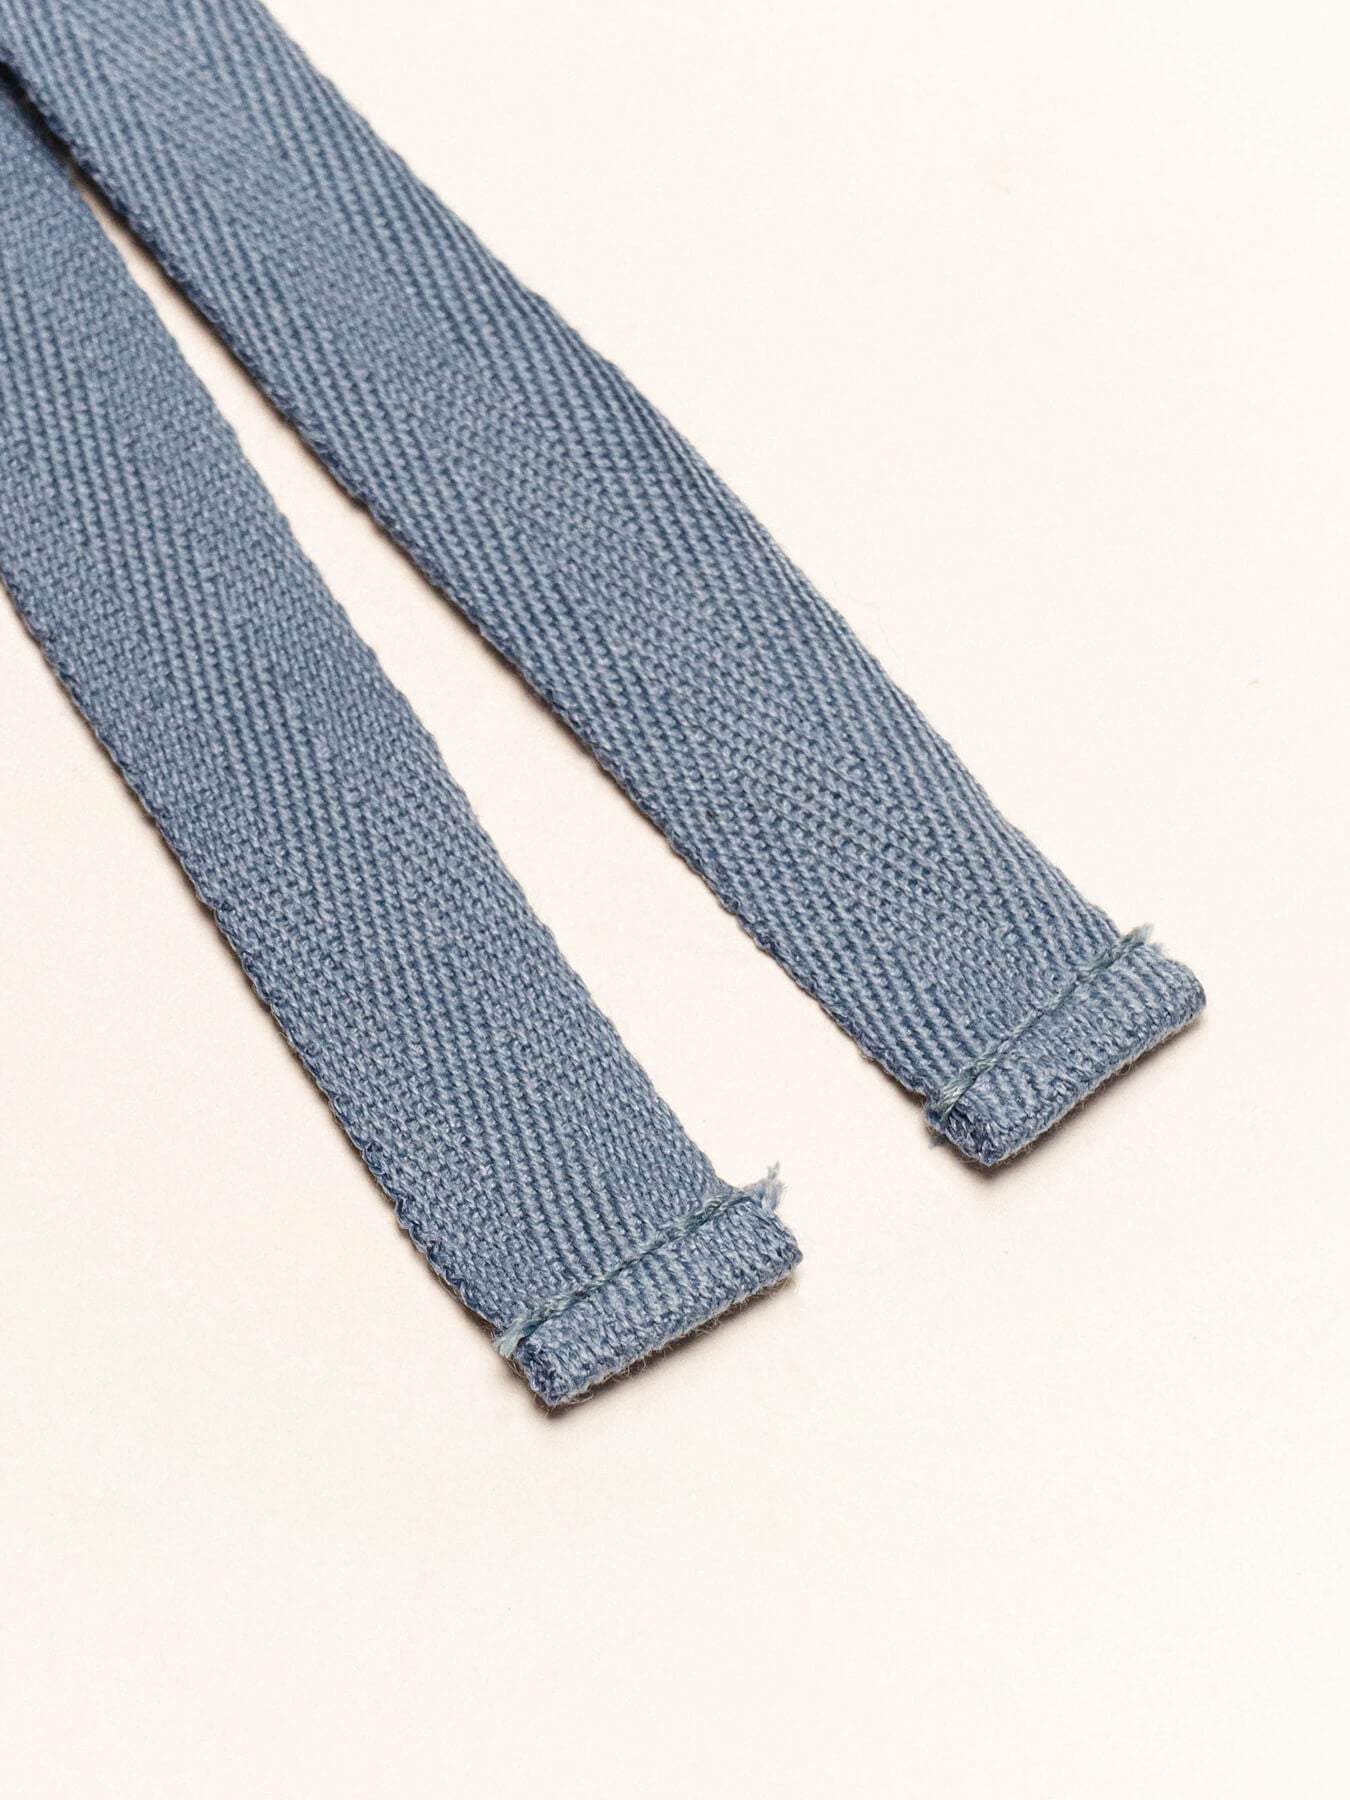 Blue Jeans Herringbone Ribbon